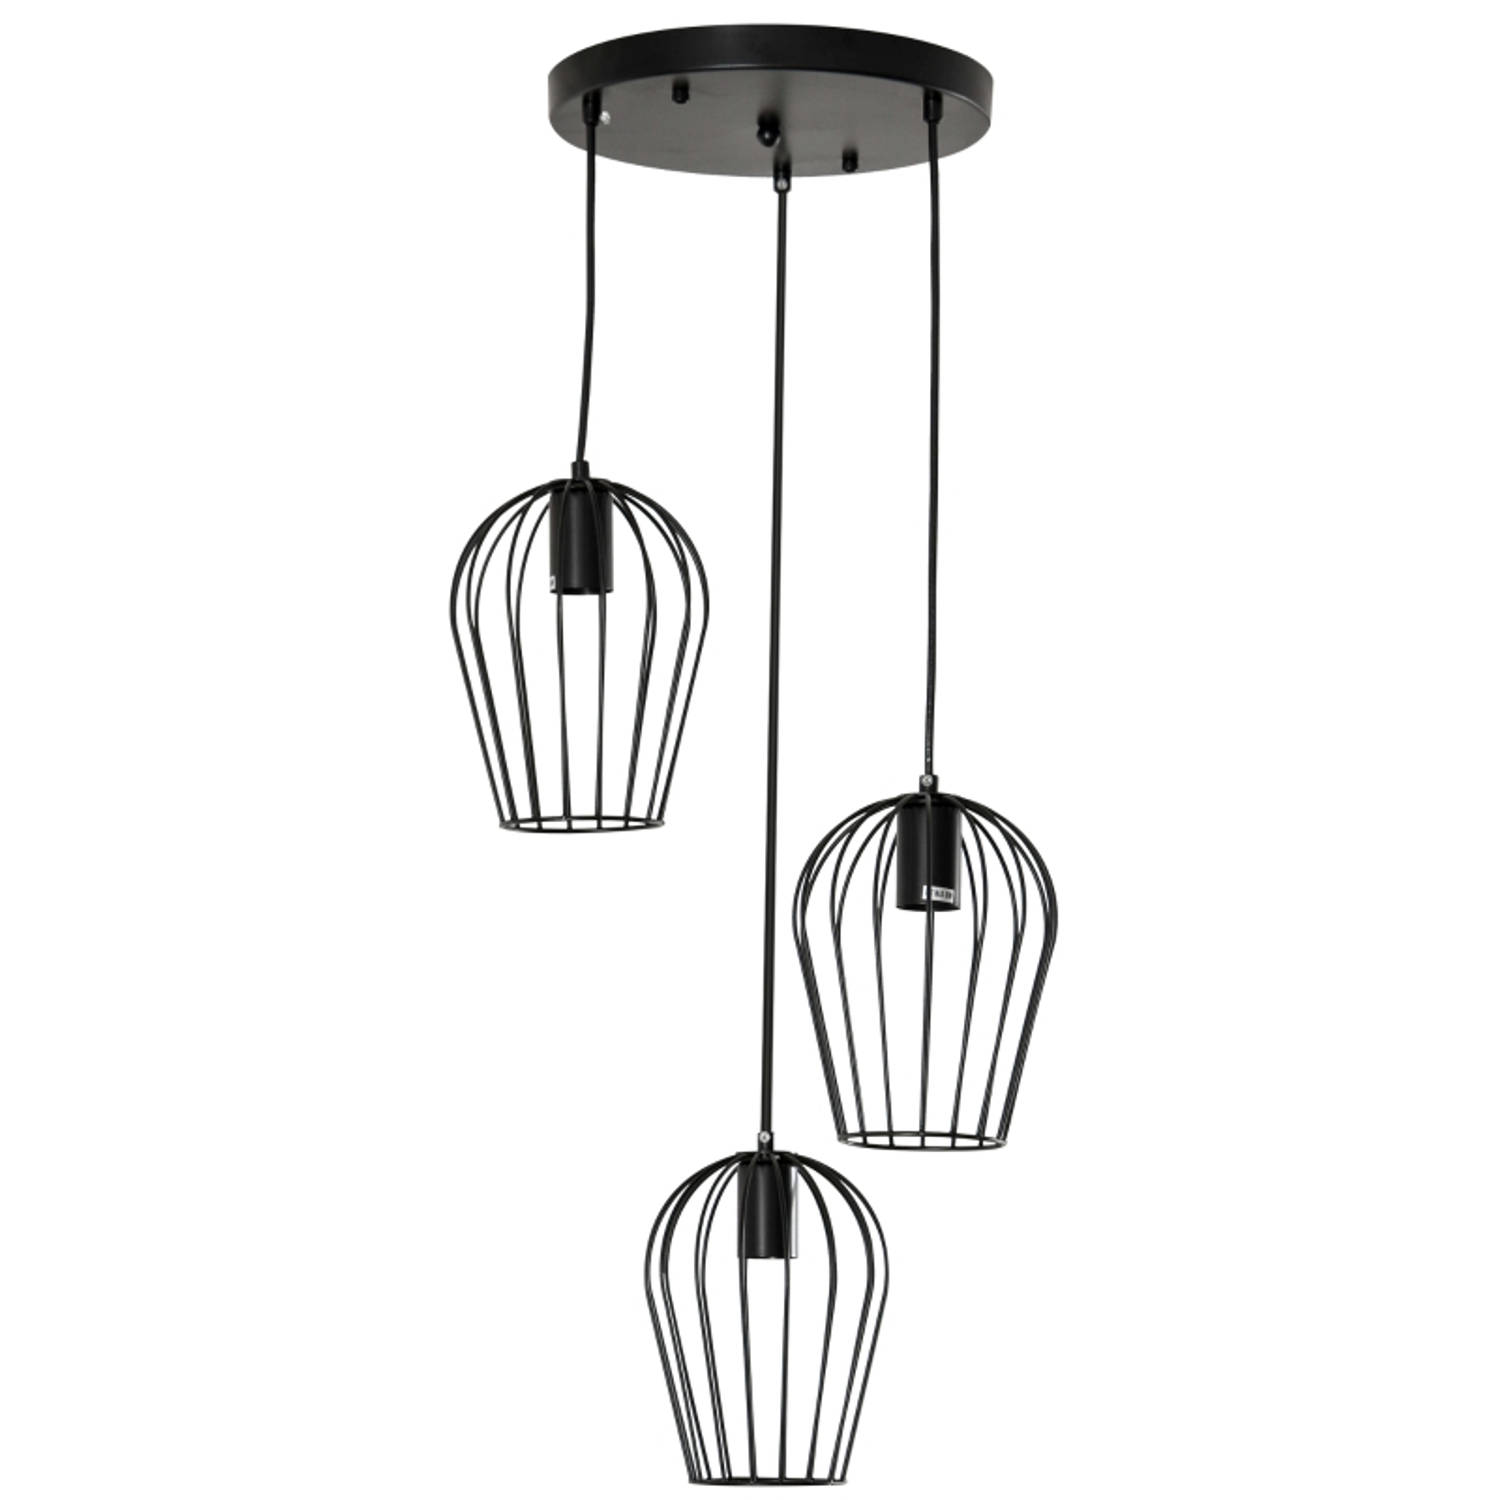 Hanglamp - Lampen - Verlichting plafondlampen - Metaal - Zwart - Ø38 x 133H cm